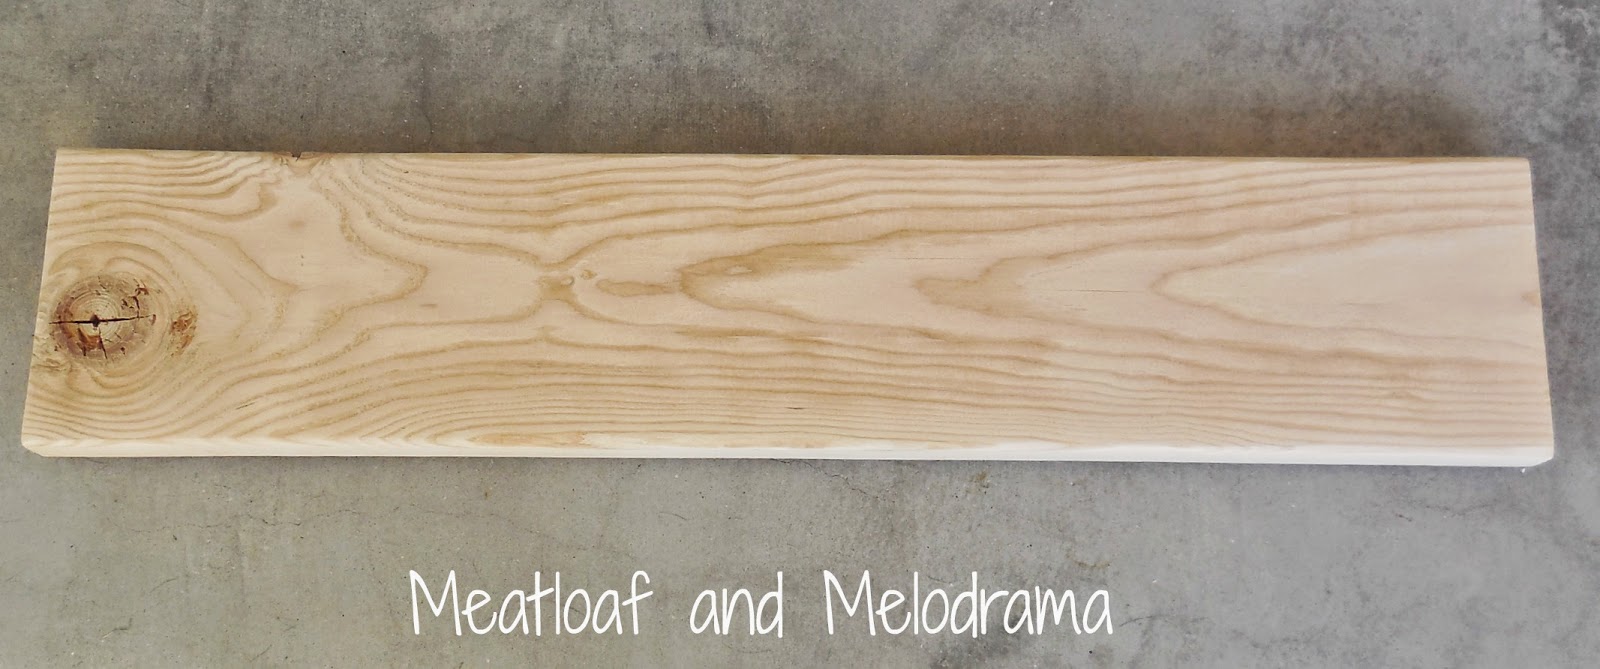 plain wooden board